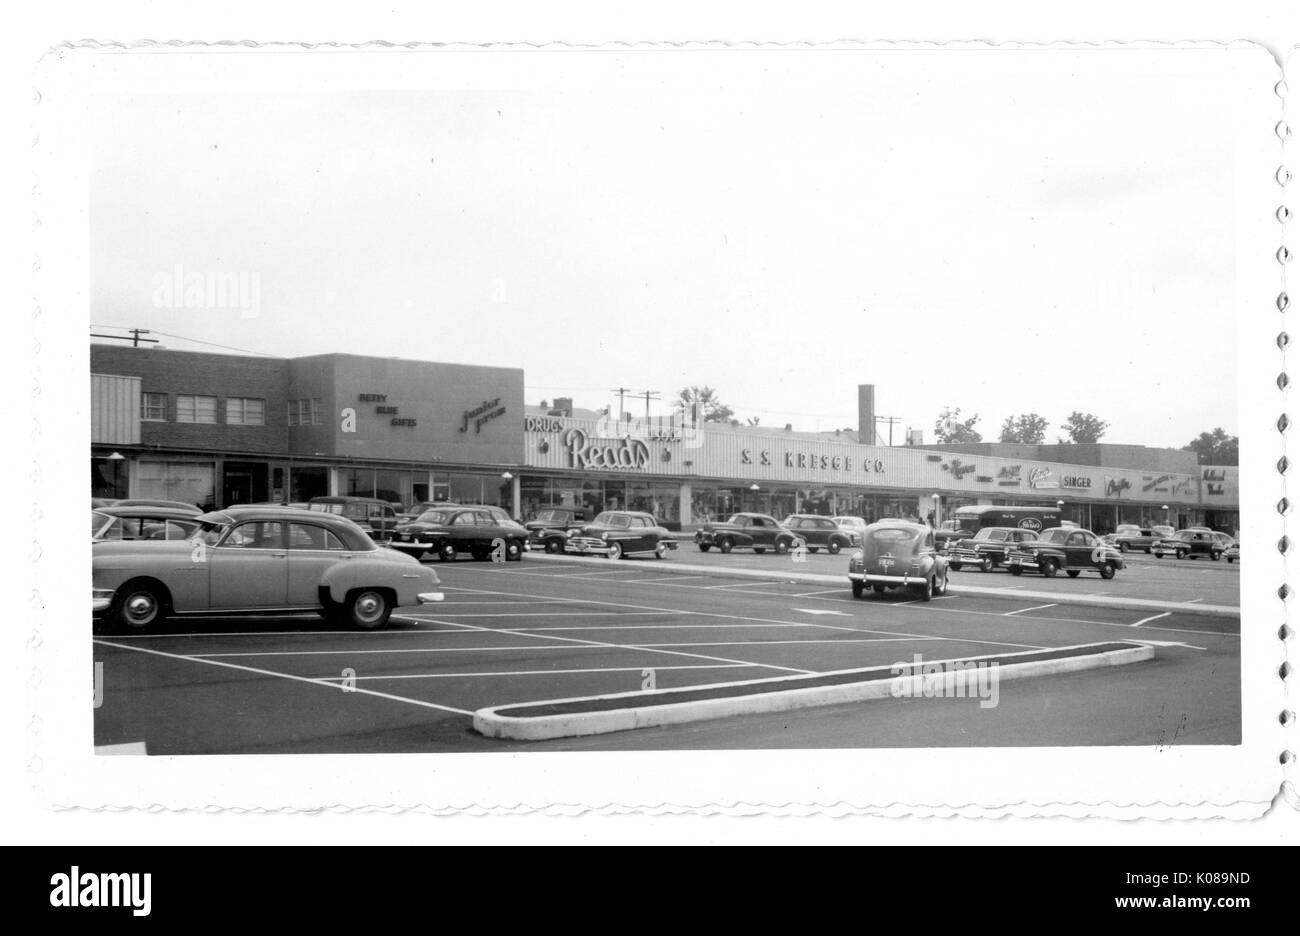 Foto der Parkplatz für die Northwood Shopping Center in Baltimore, Maryland, mit Autos und kommerziellen Gebäuden wie Liest, S S Kresge Firma, und Sänger, Baltimore, Maryland, 1951. Stockfoto